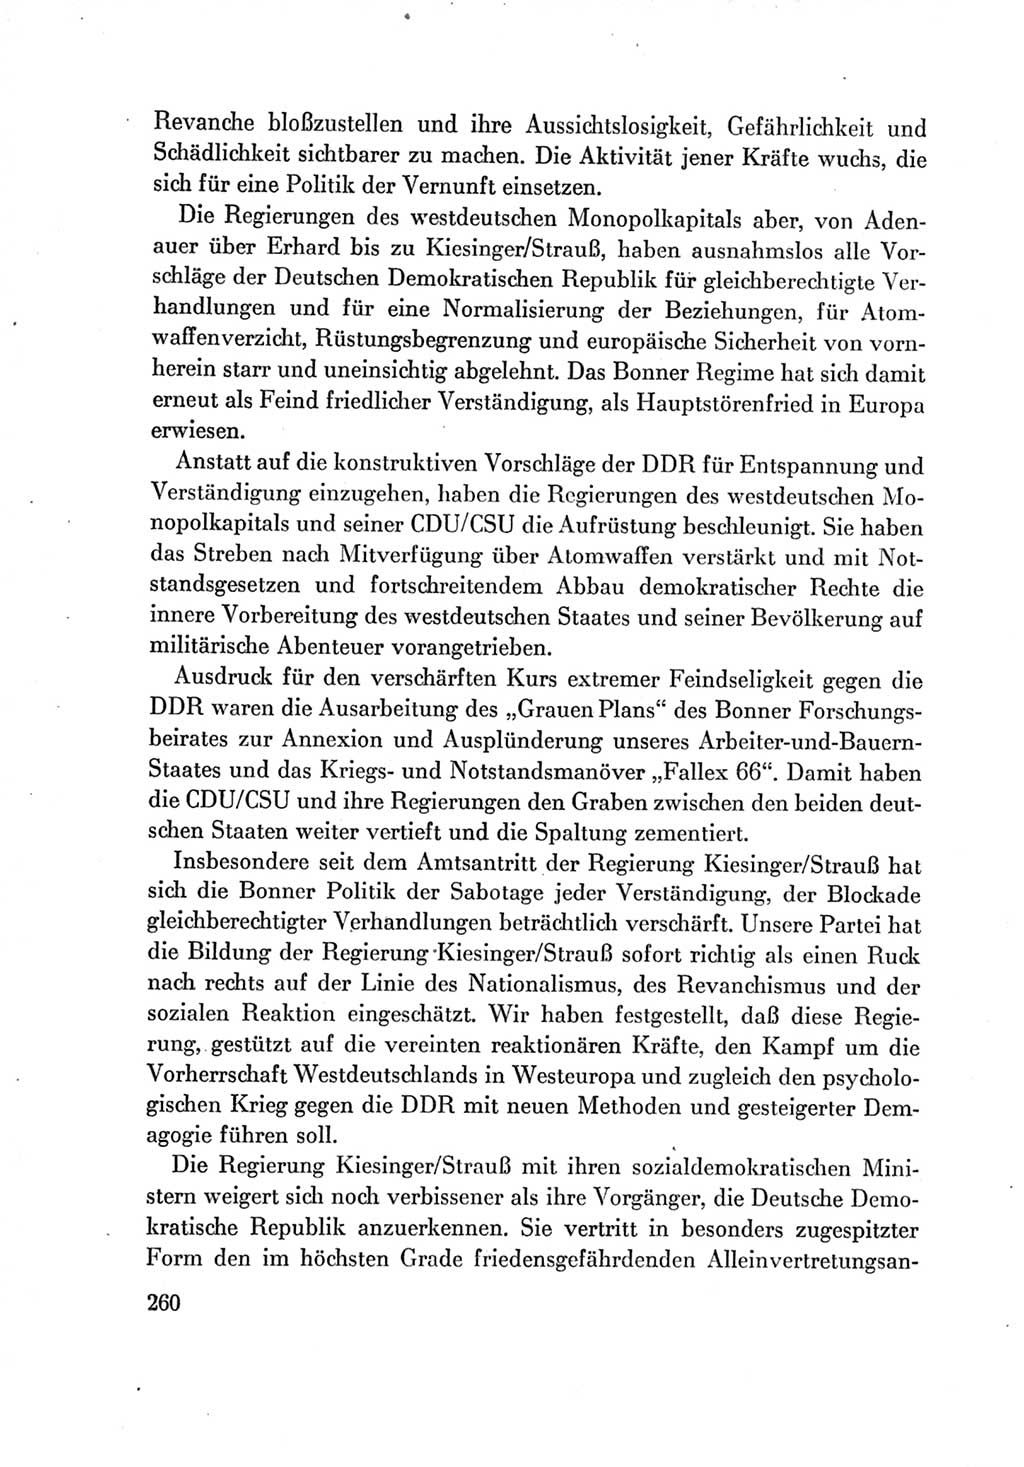 Protokoll der Verhandlungen des Ⅶ. Parteitages der Sozialistischen Einheitspartei Deutschlands (SED) [Deutsche Demokratische Republik (DDR)] 1967, Band Ⅳ, Seite 260 (Prot. Verh. Ⅶ. PT SED DDR 1967, Bd. Ⅳ, S. 260)